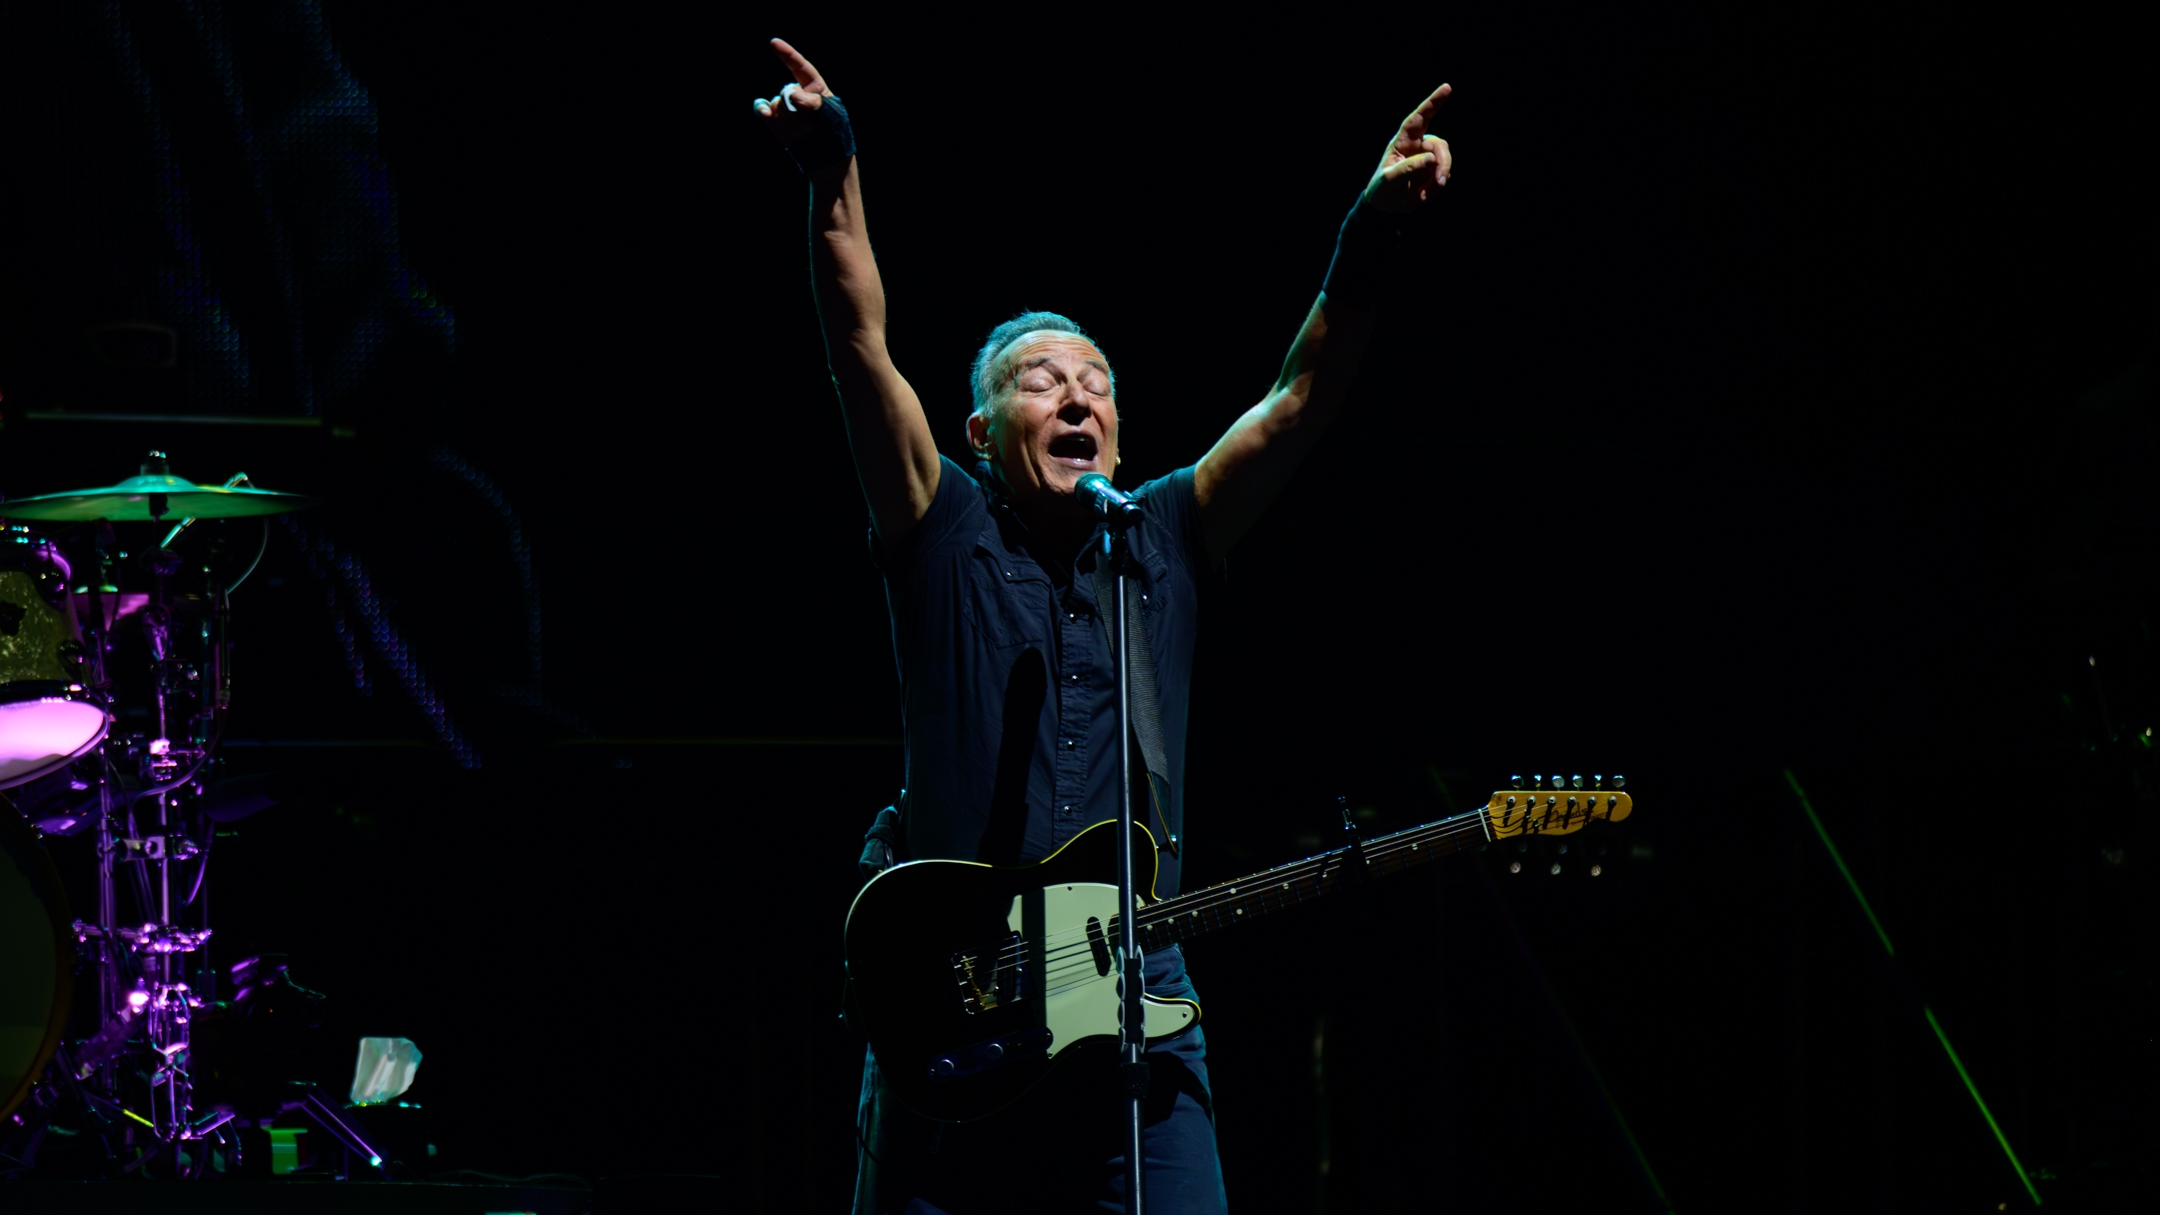 Springsteen a masszív New Jersey-i tengerparti fesztivál címlapján szerepel